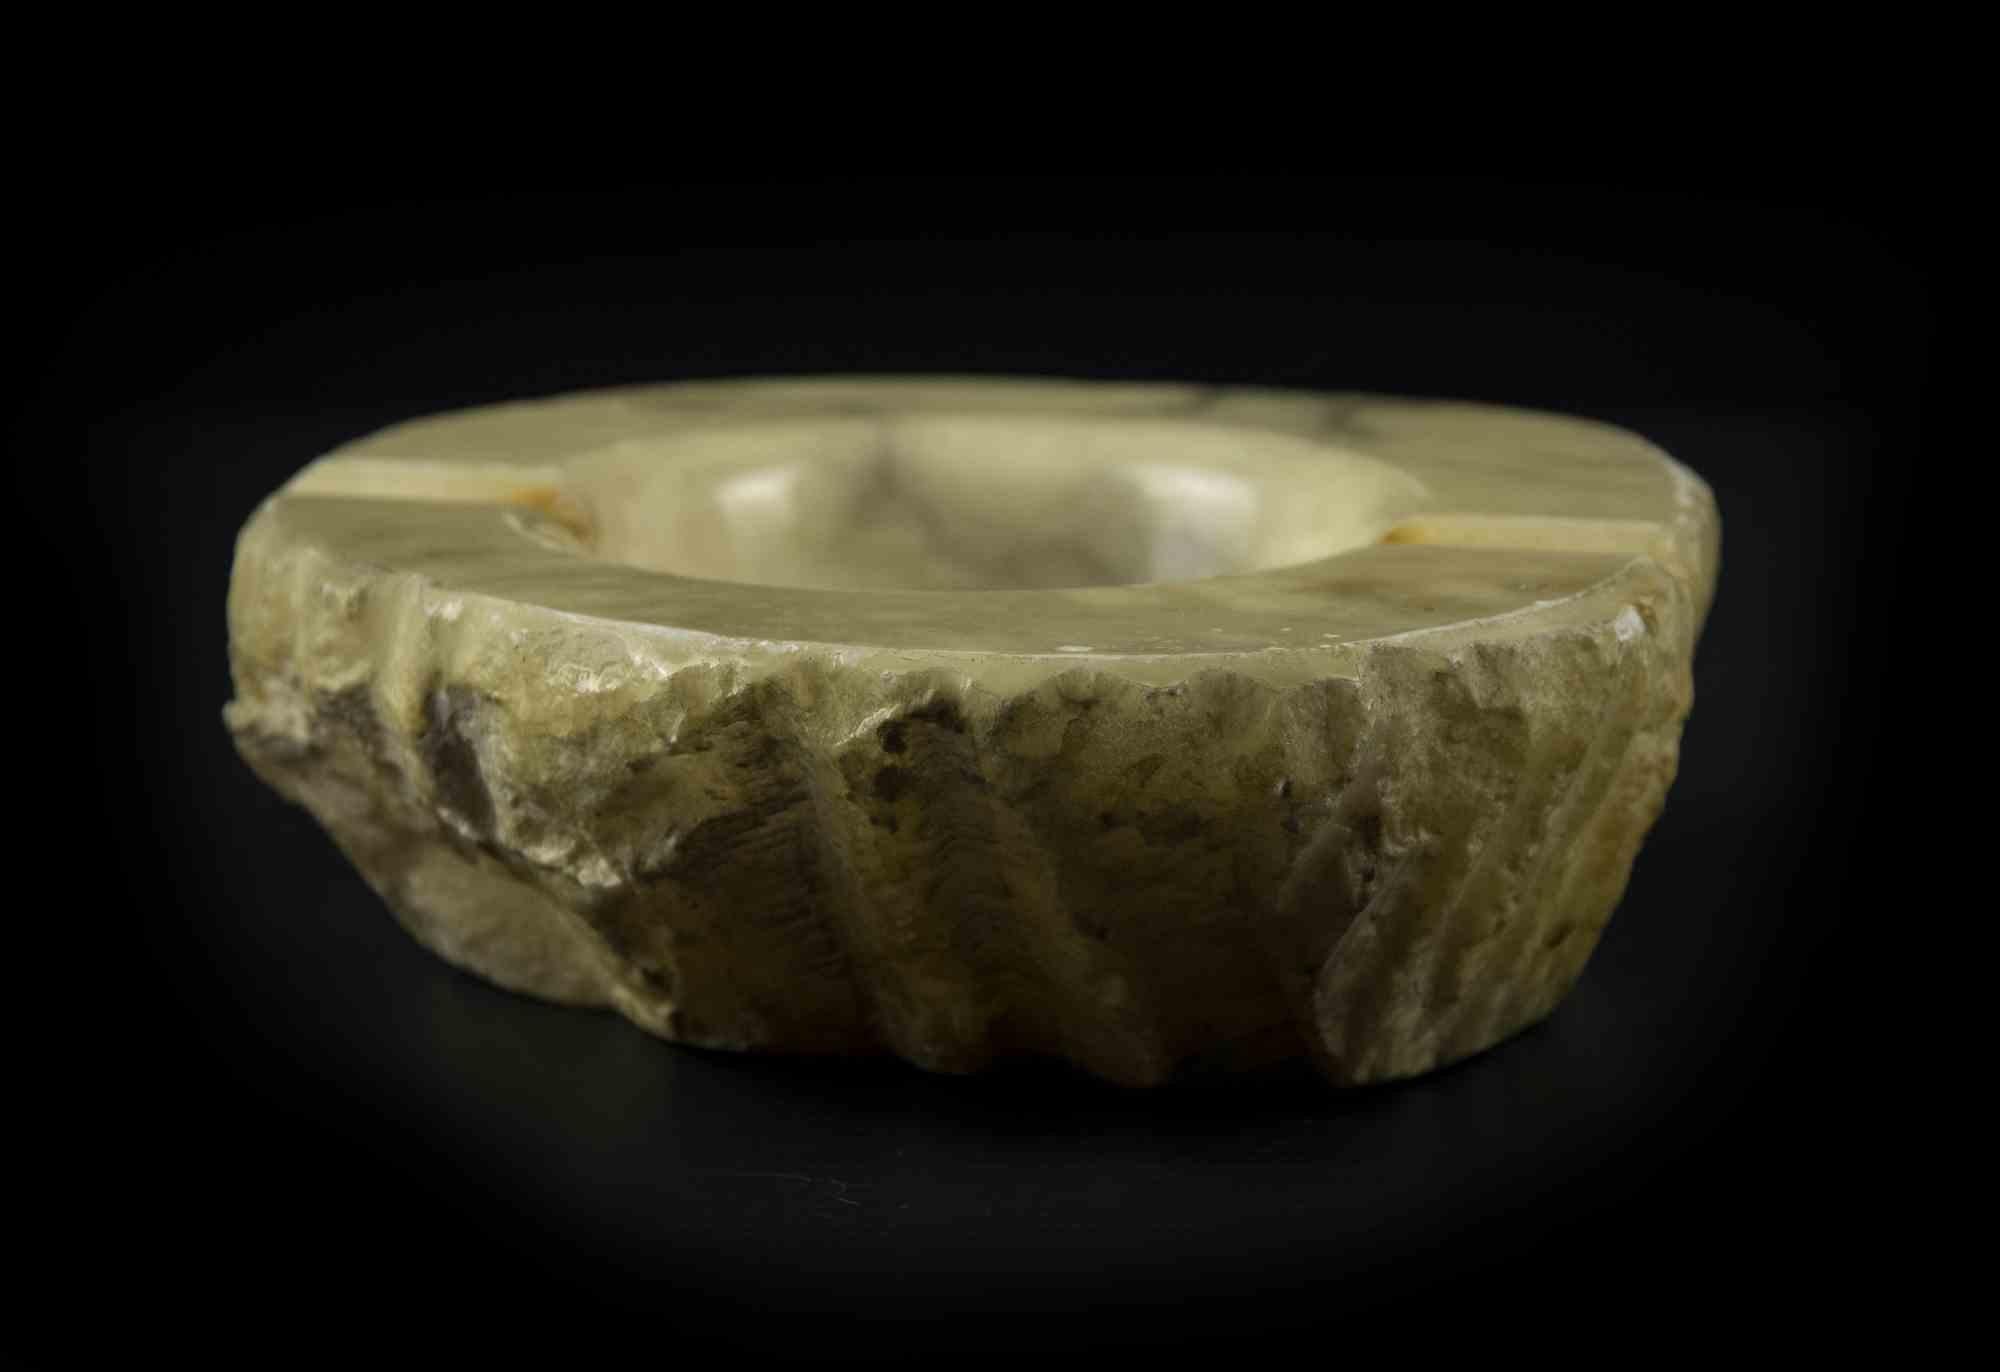 El cenicero de alabastro es un original objeto decorativo realizado en Italia a mediados del siglo XX.

Realizada íntegramente en alabastro (según consta en la etiqueta bajo la base).